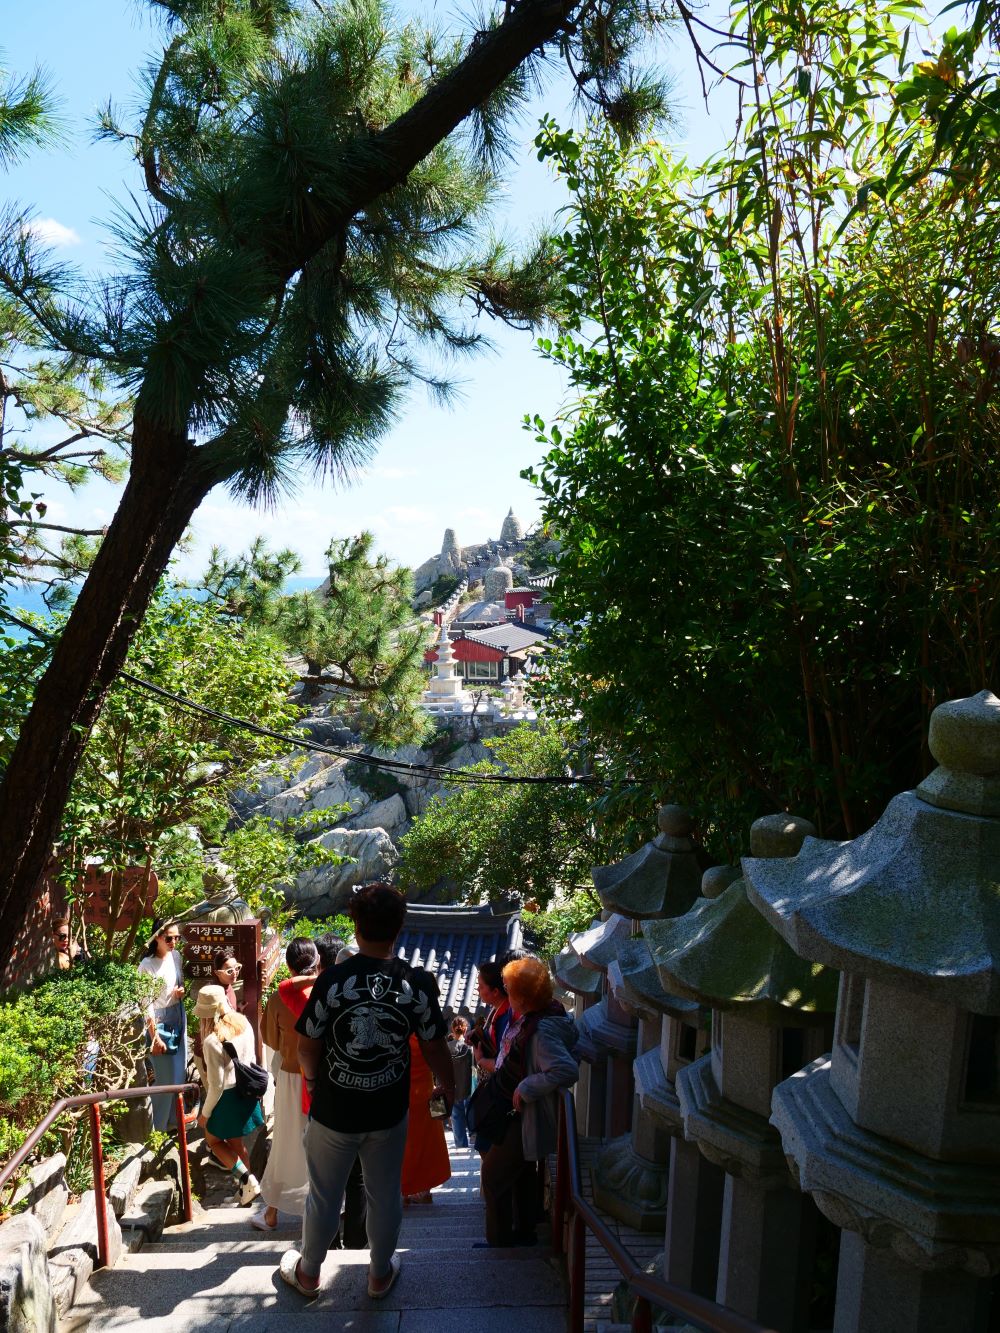 A főkapu után egy meredek, 108 fokos lépcsősor kezdődik, amit itt-ott Buddha szobrok öveznek